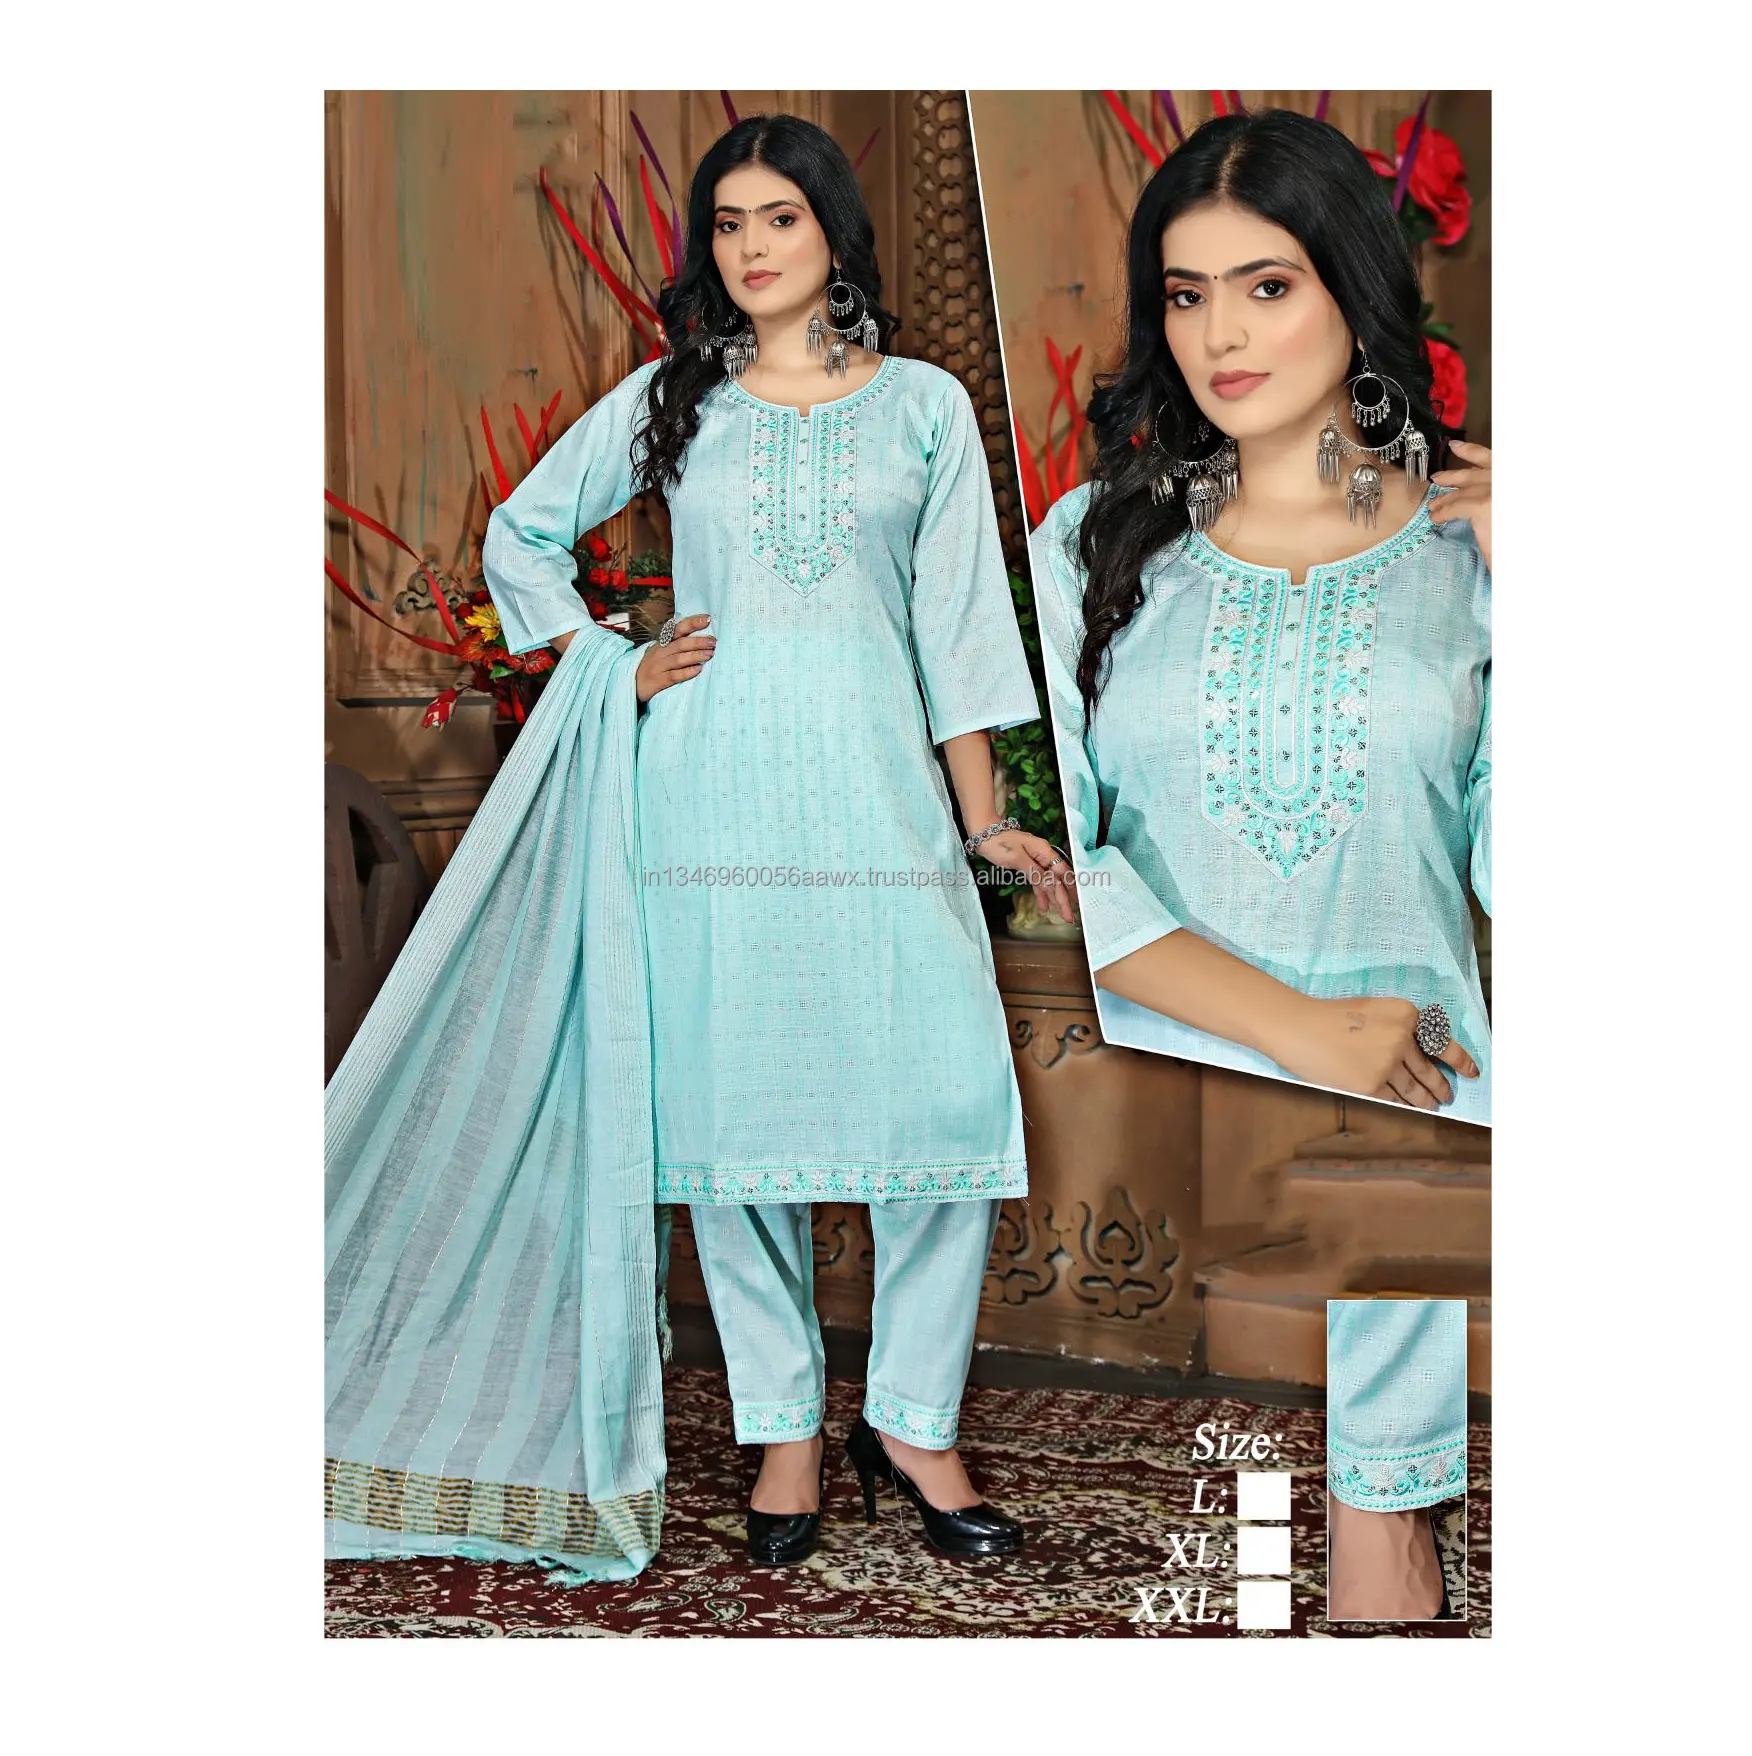 Hochwertige Eleganz in himmelblauem Rayon Kurti und Kleider kollektion für Hochzeits-und Party kleidung aus Indien